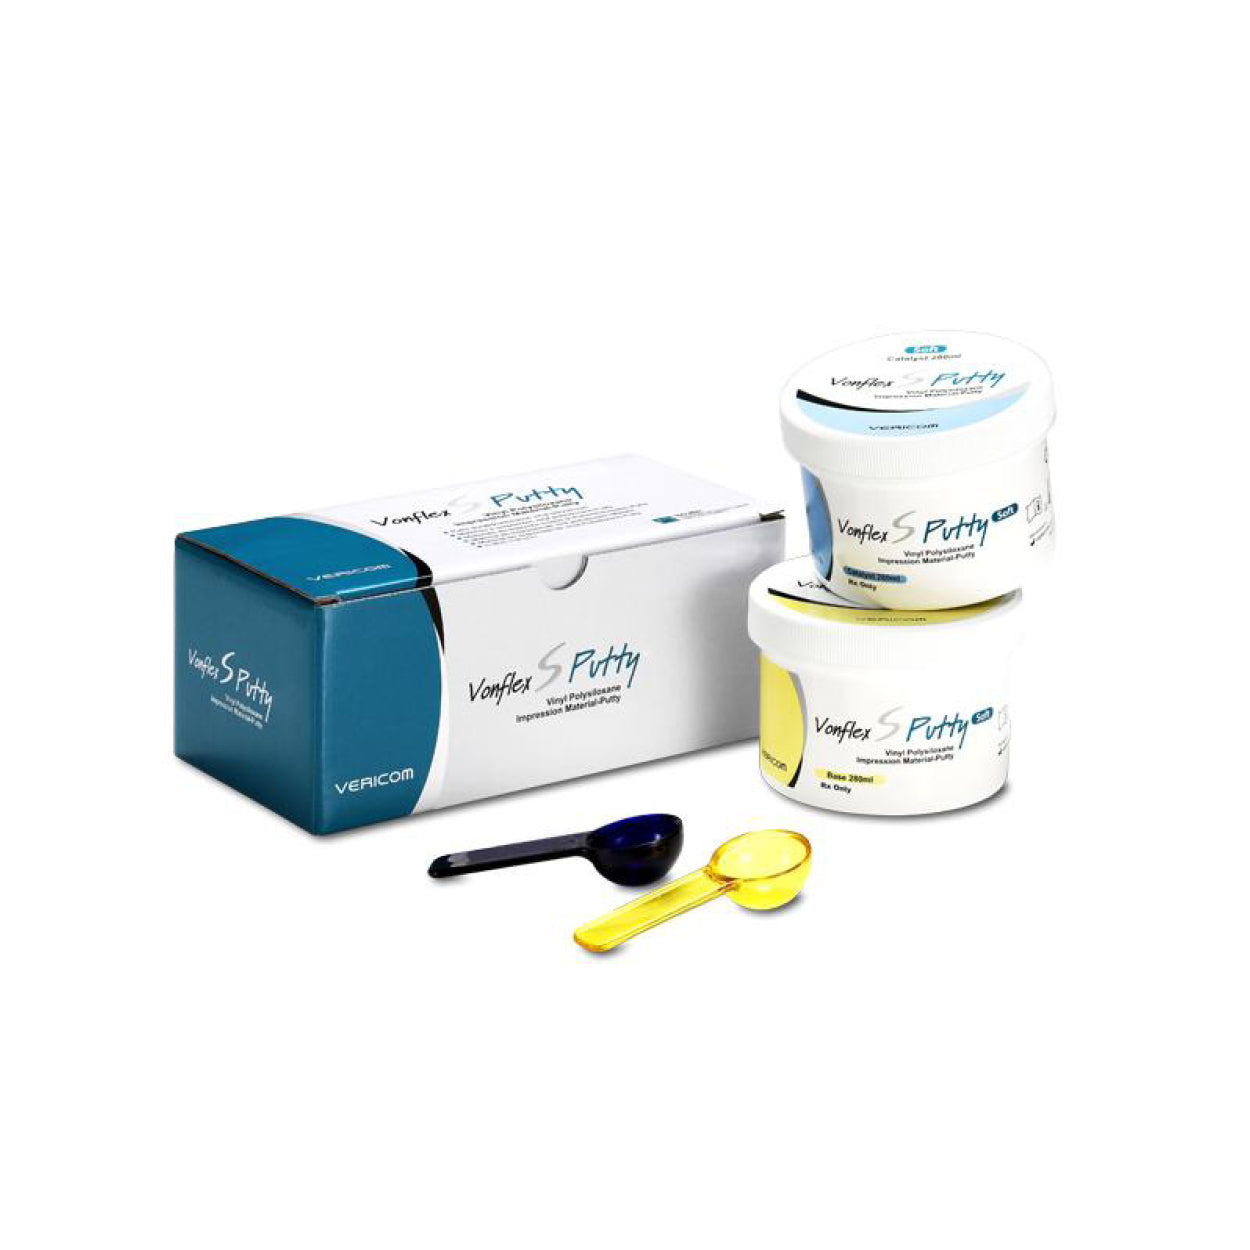 Vonflex S™ Putty, Dental Impression Material, Impression, Dental Consumable products, Dental Products, Vericom, Putty 